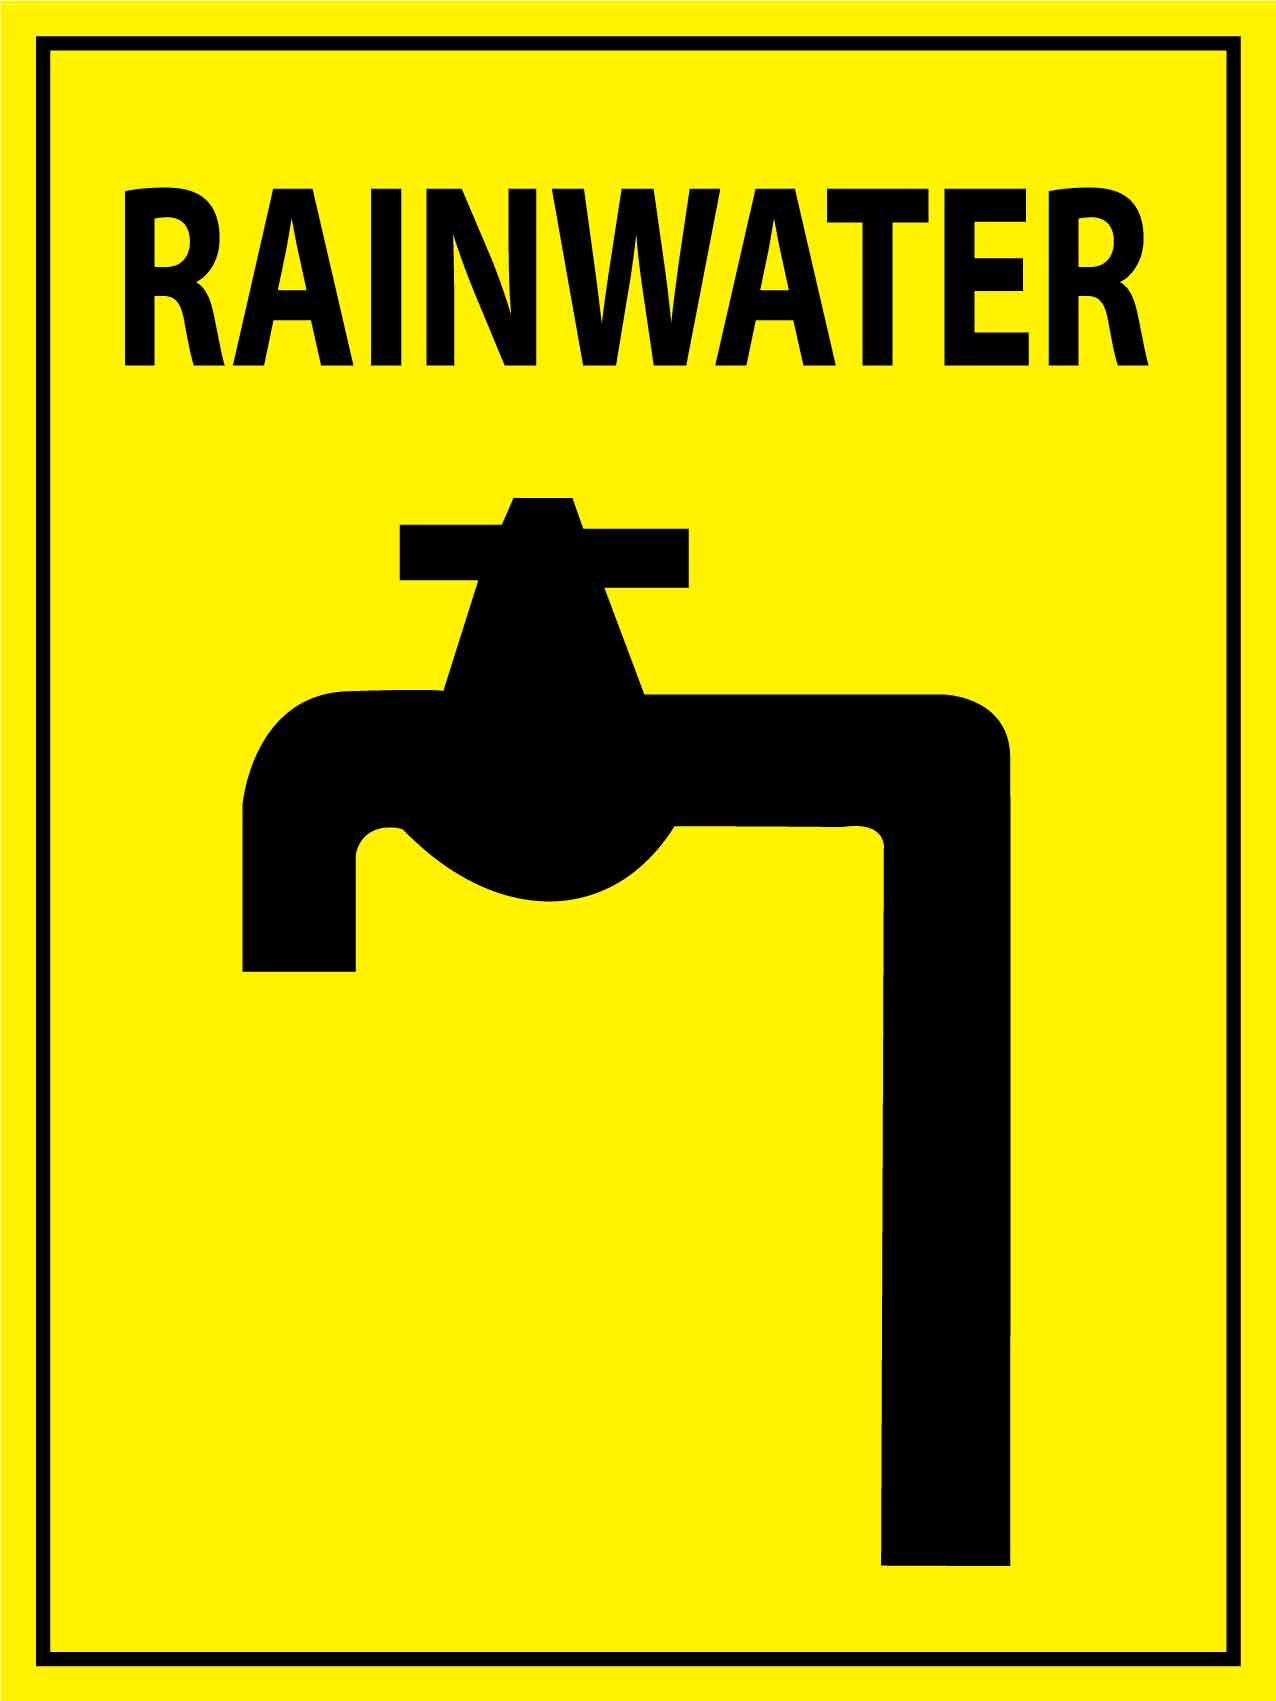 Rainwater Sign